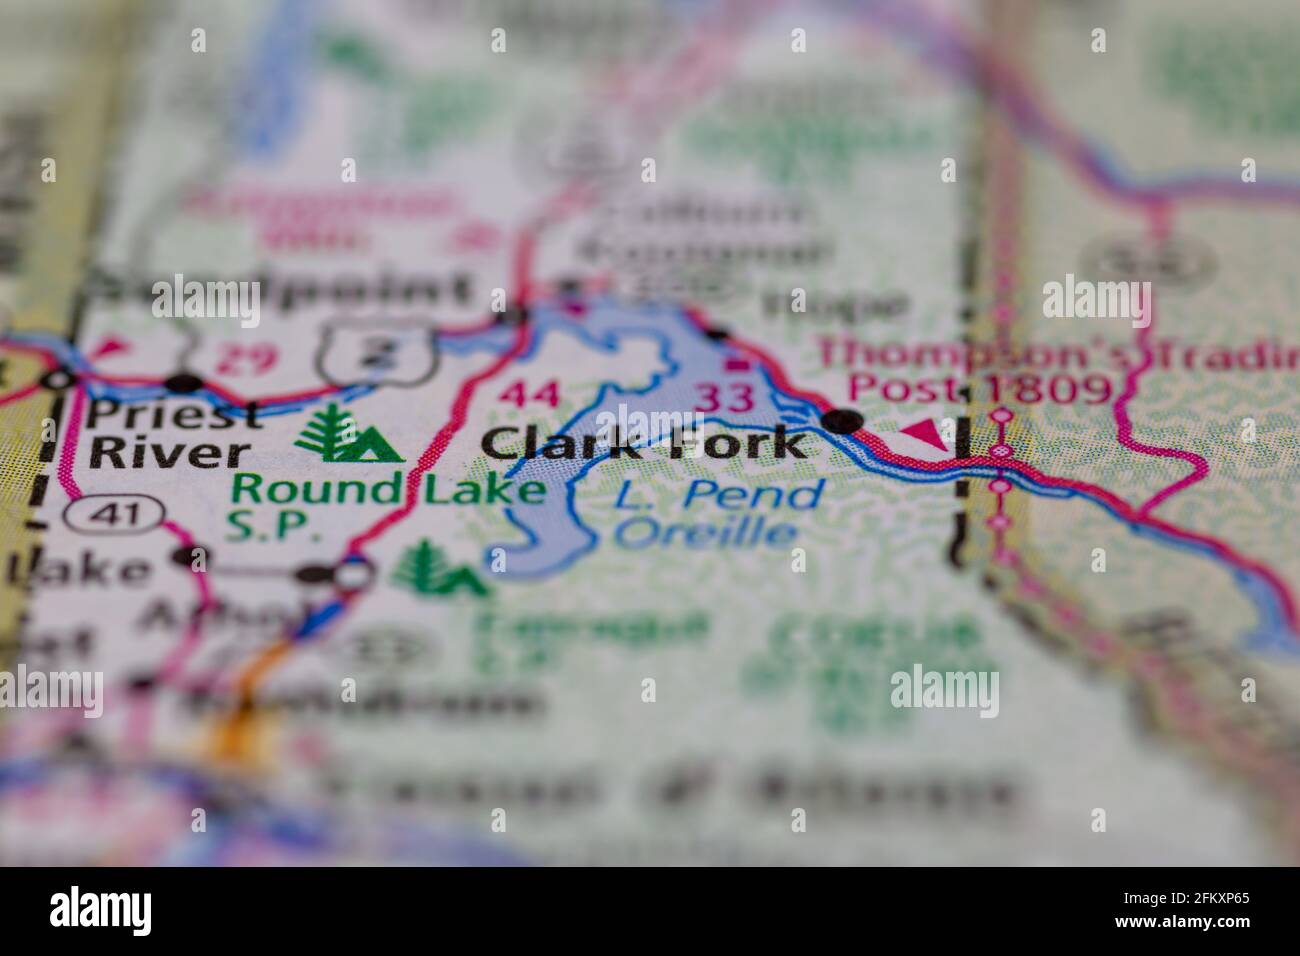 Clark Fork Idaho USA montré sur une carte de géographie ou carte routière Banque D'Images